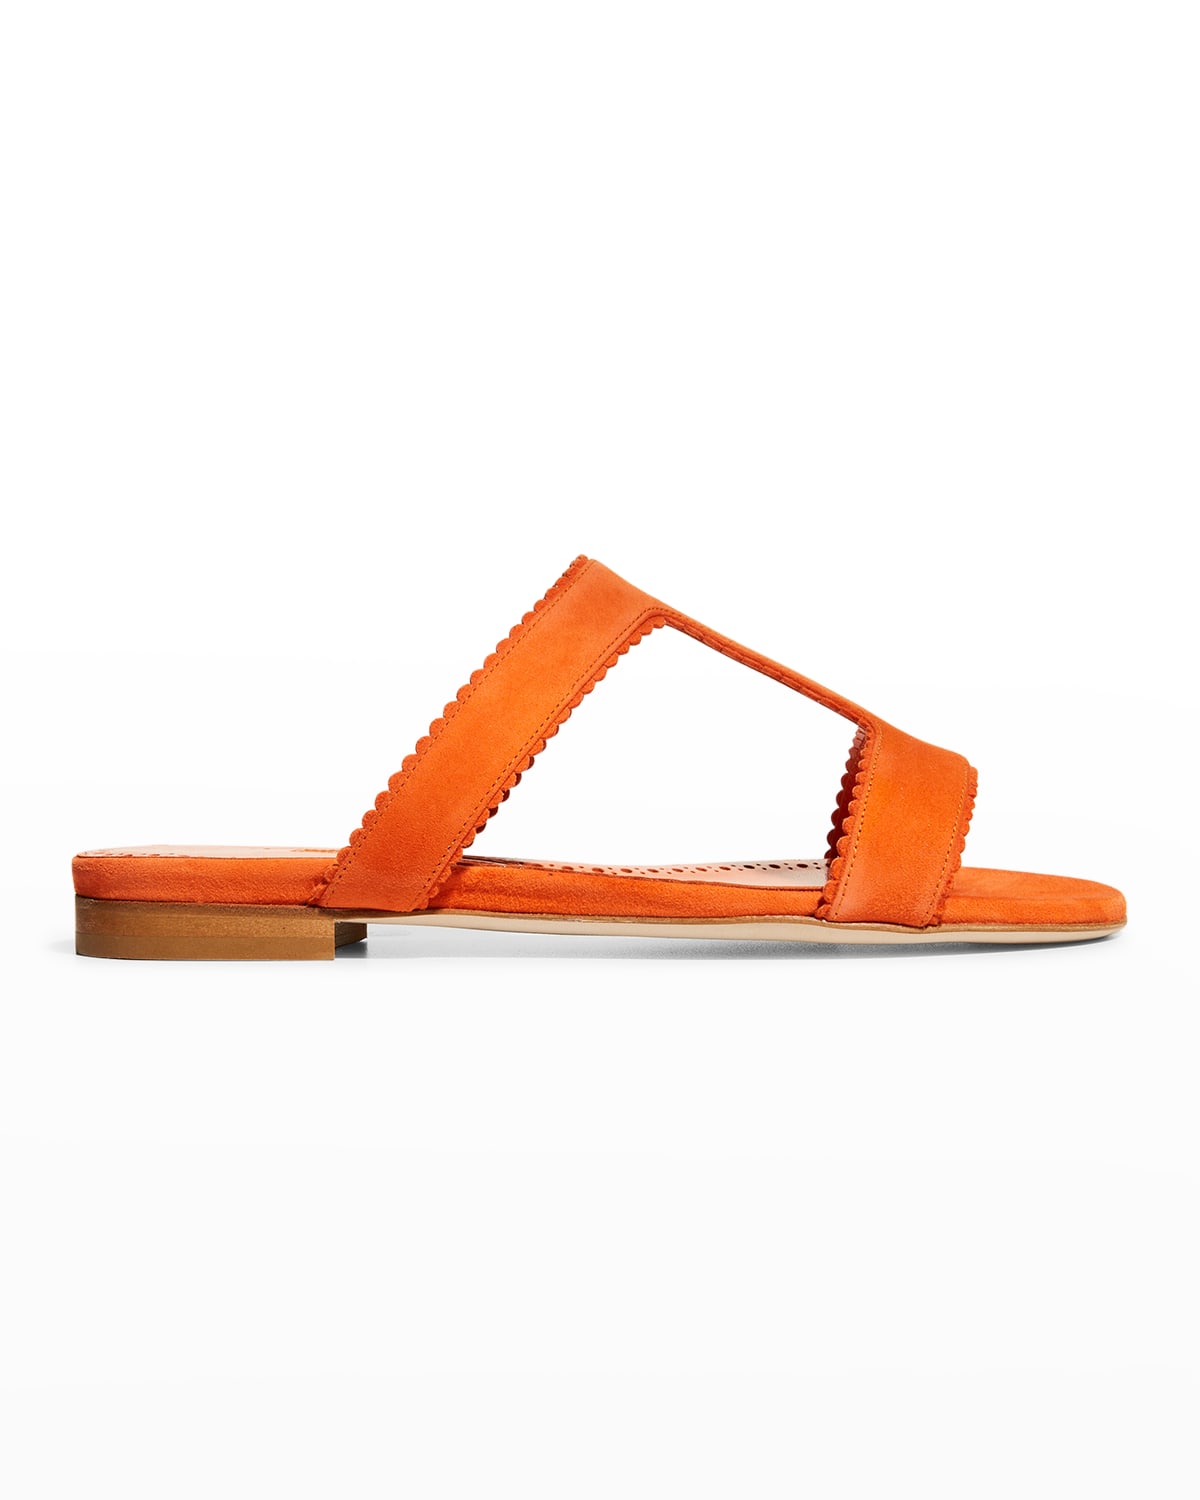 MANOLO BLAHNIK Sandals for Women | ModeSens